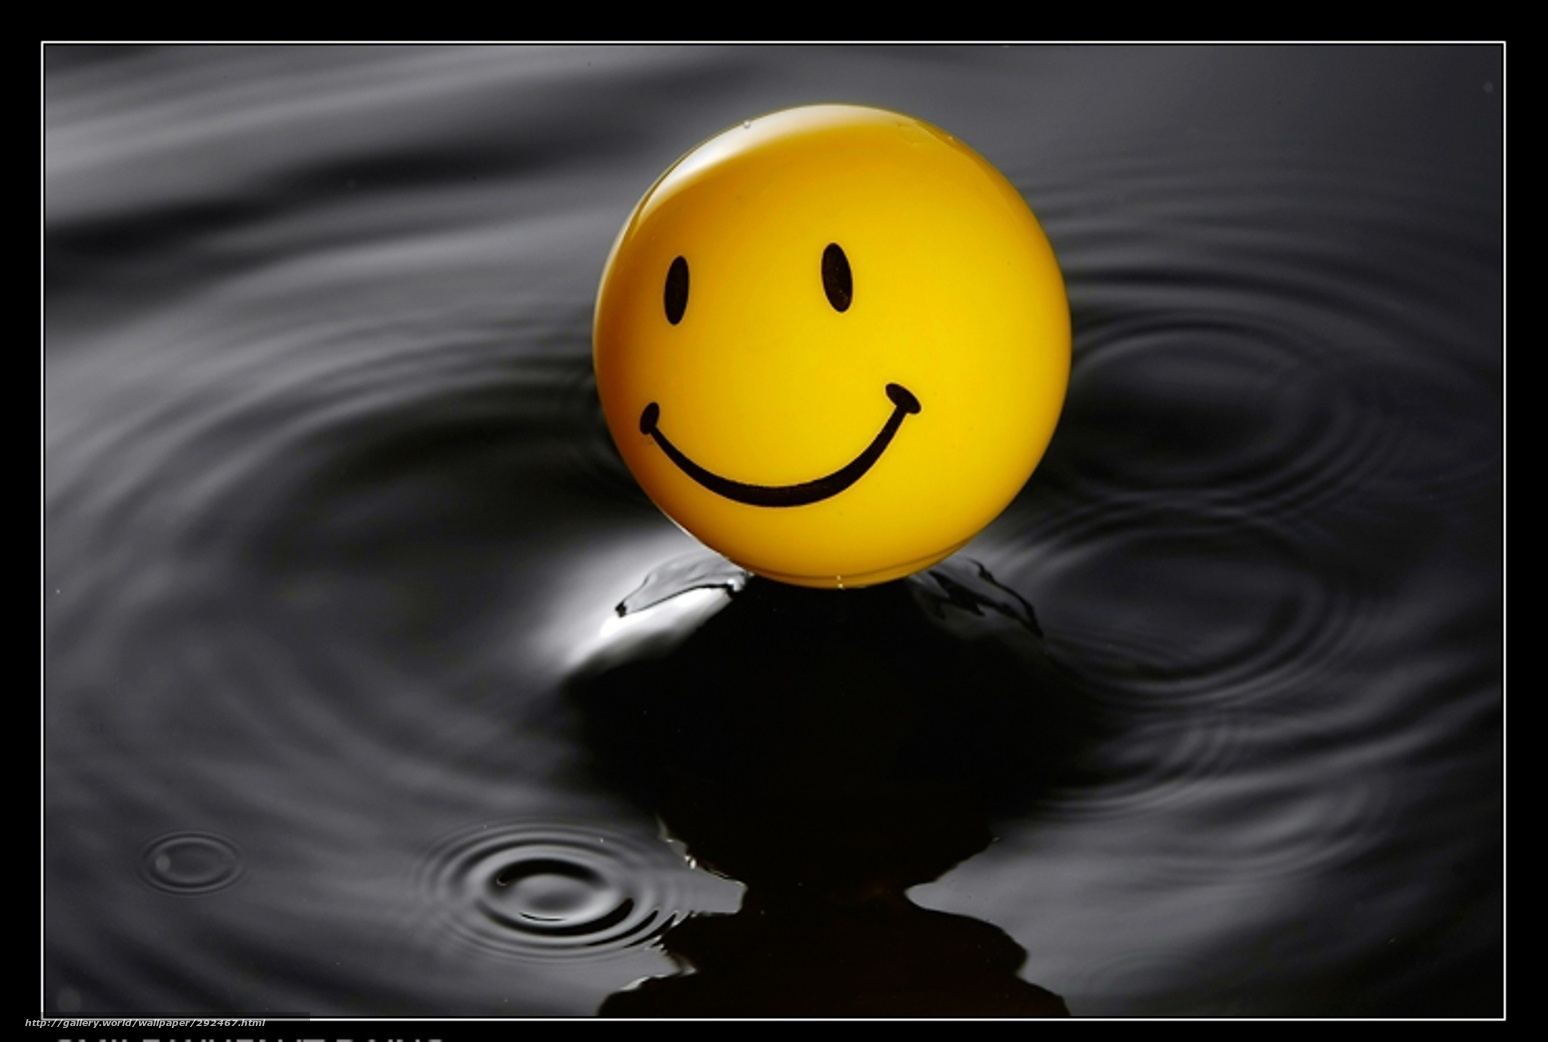 Black Smile - smile emoji black water